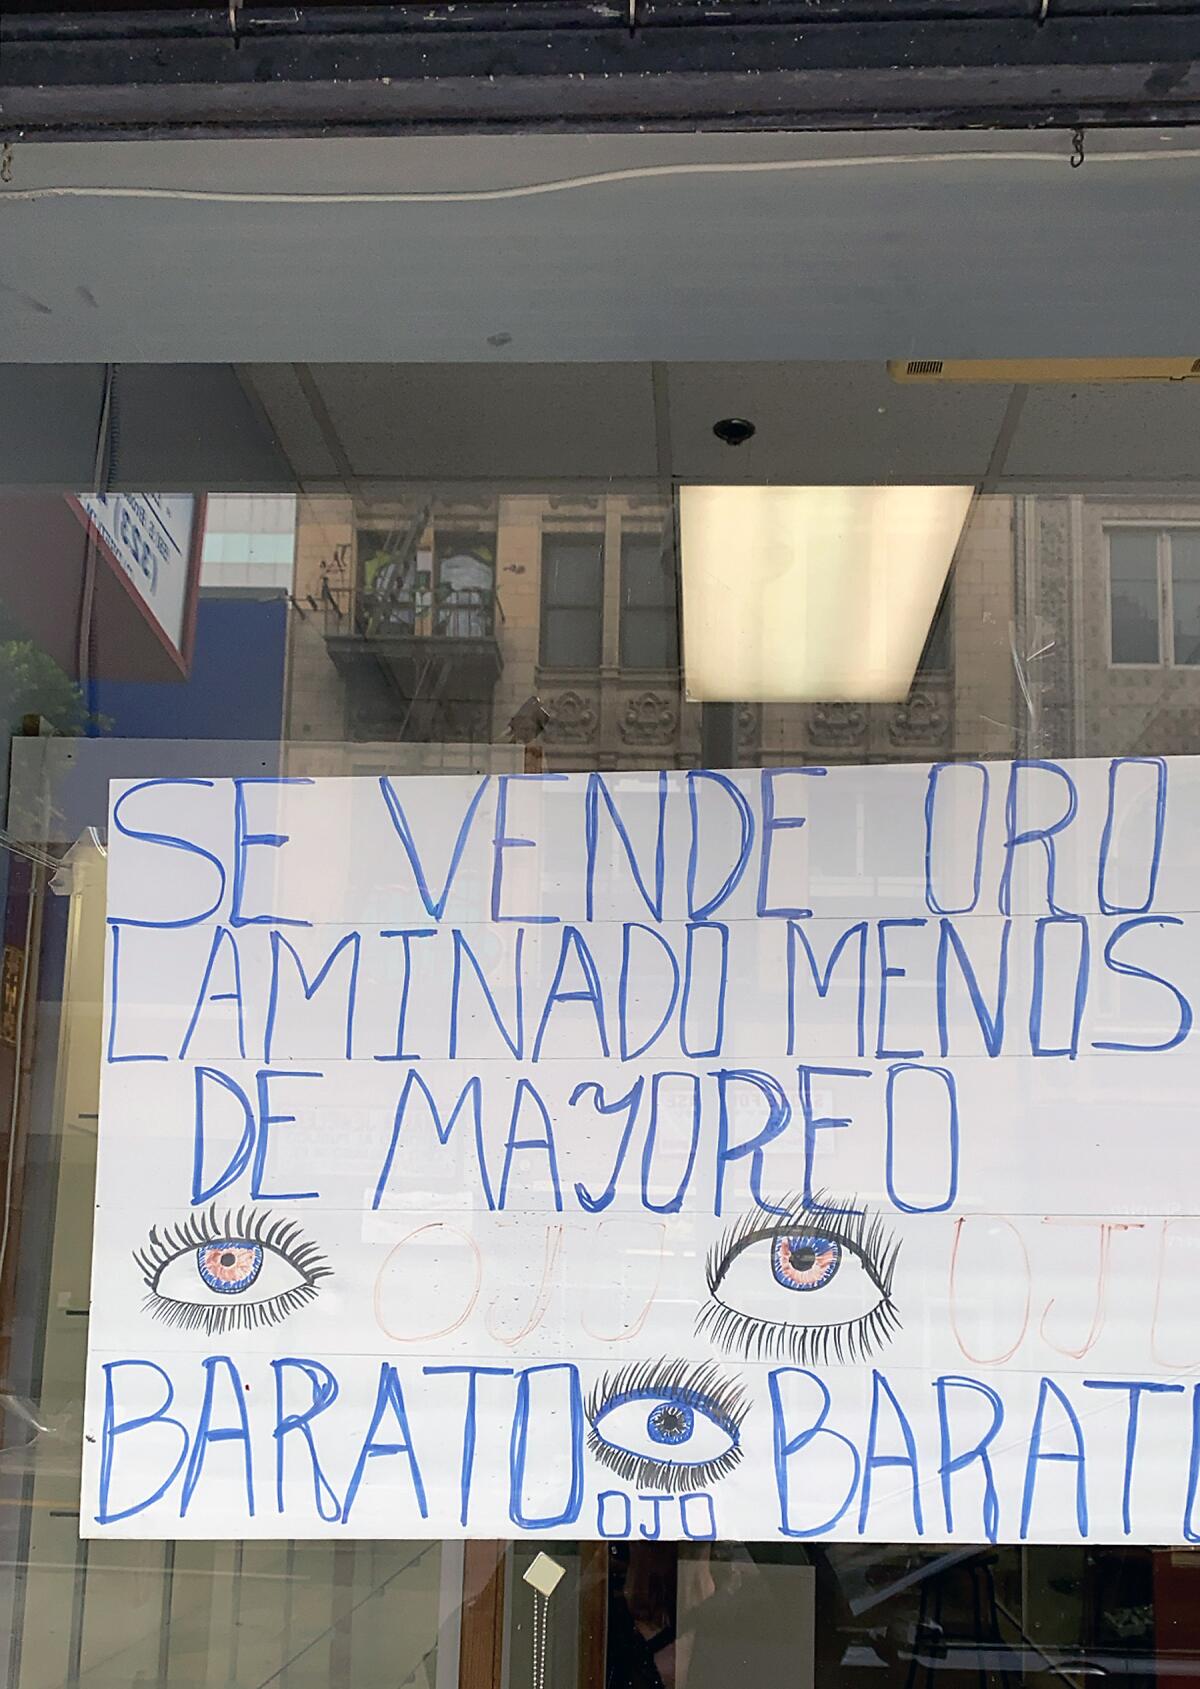 A handmade sign with eyes drawn throughout reads "Se Vende Oro Laminado Menos de Mayoreo — Barato Ojo Barato"